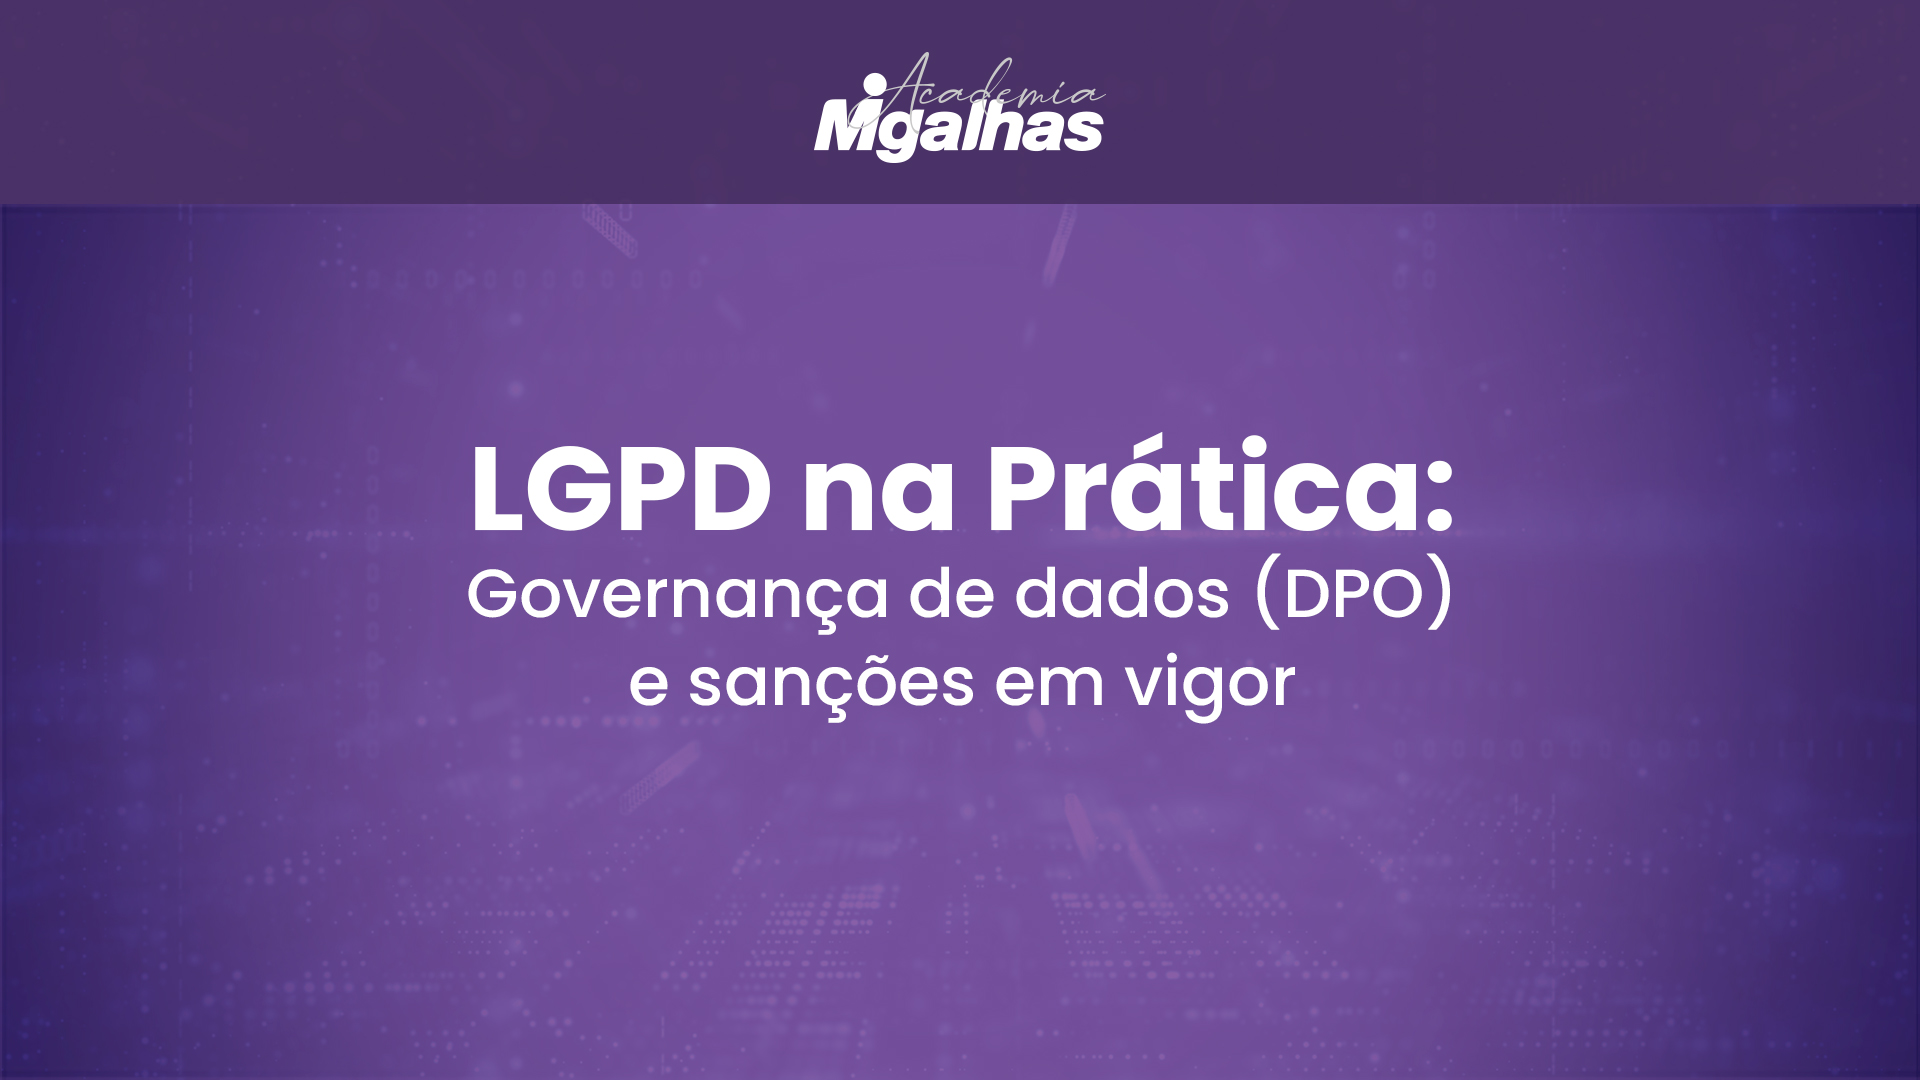 LGPD na Prática: Governança de dados (DPO) e sanções em vigor